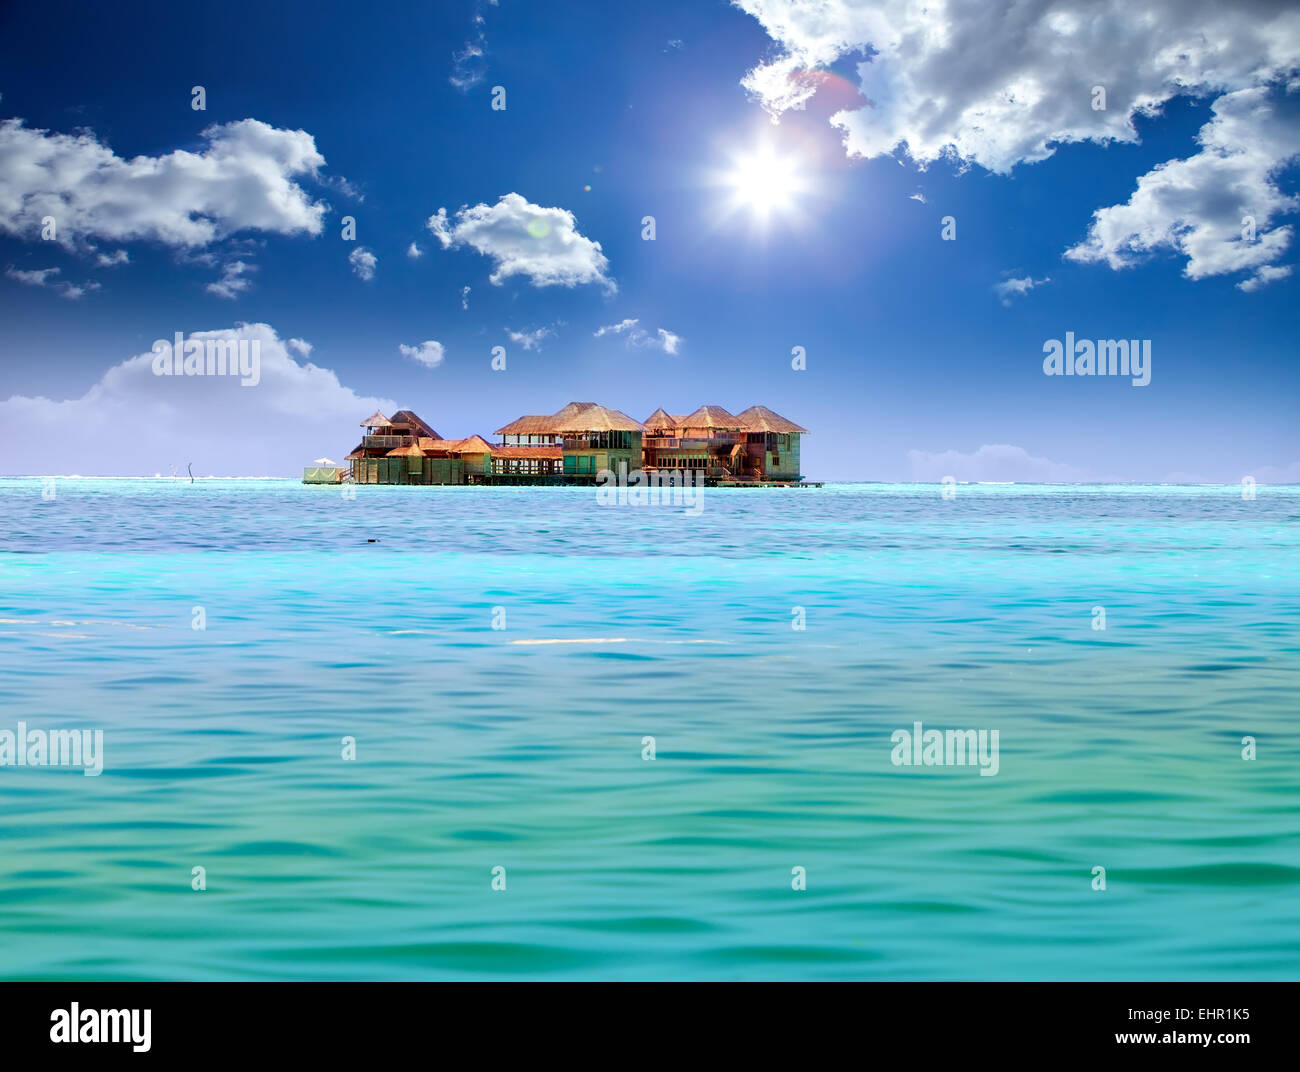 Island in ocean, overwater villas Stock Photo